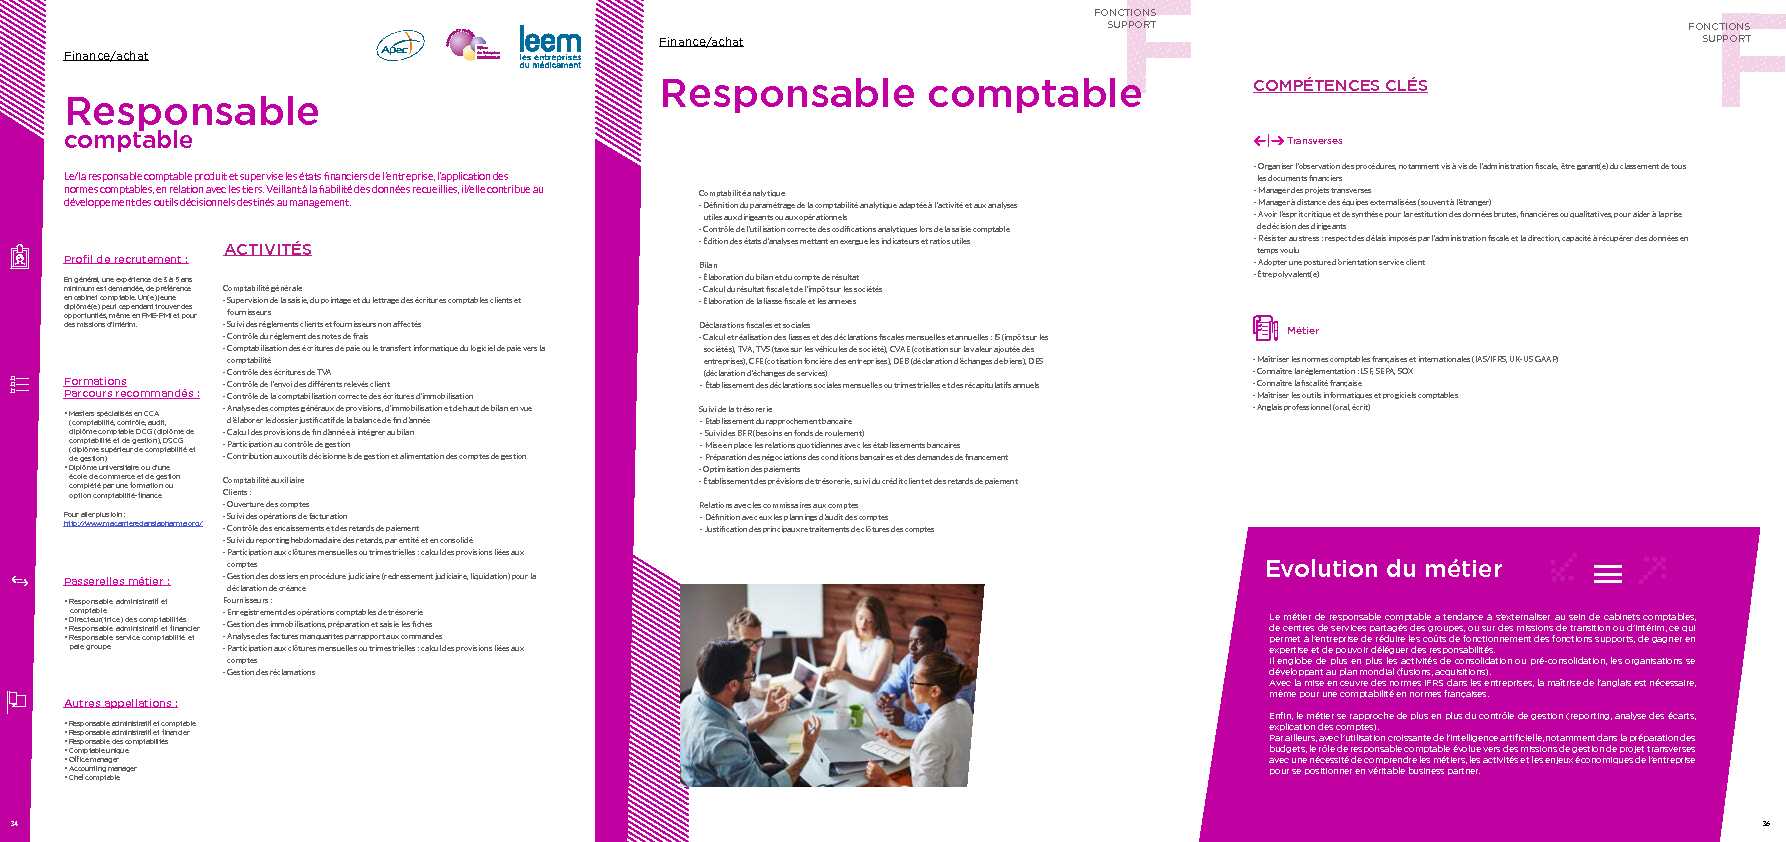 [PDF] Fiche métier Responsable comptable PDF - Leem